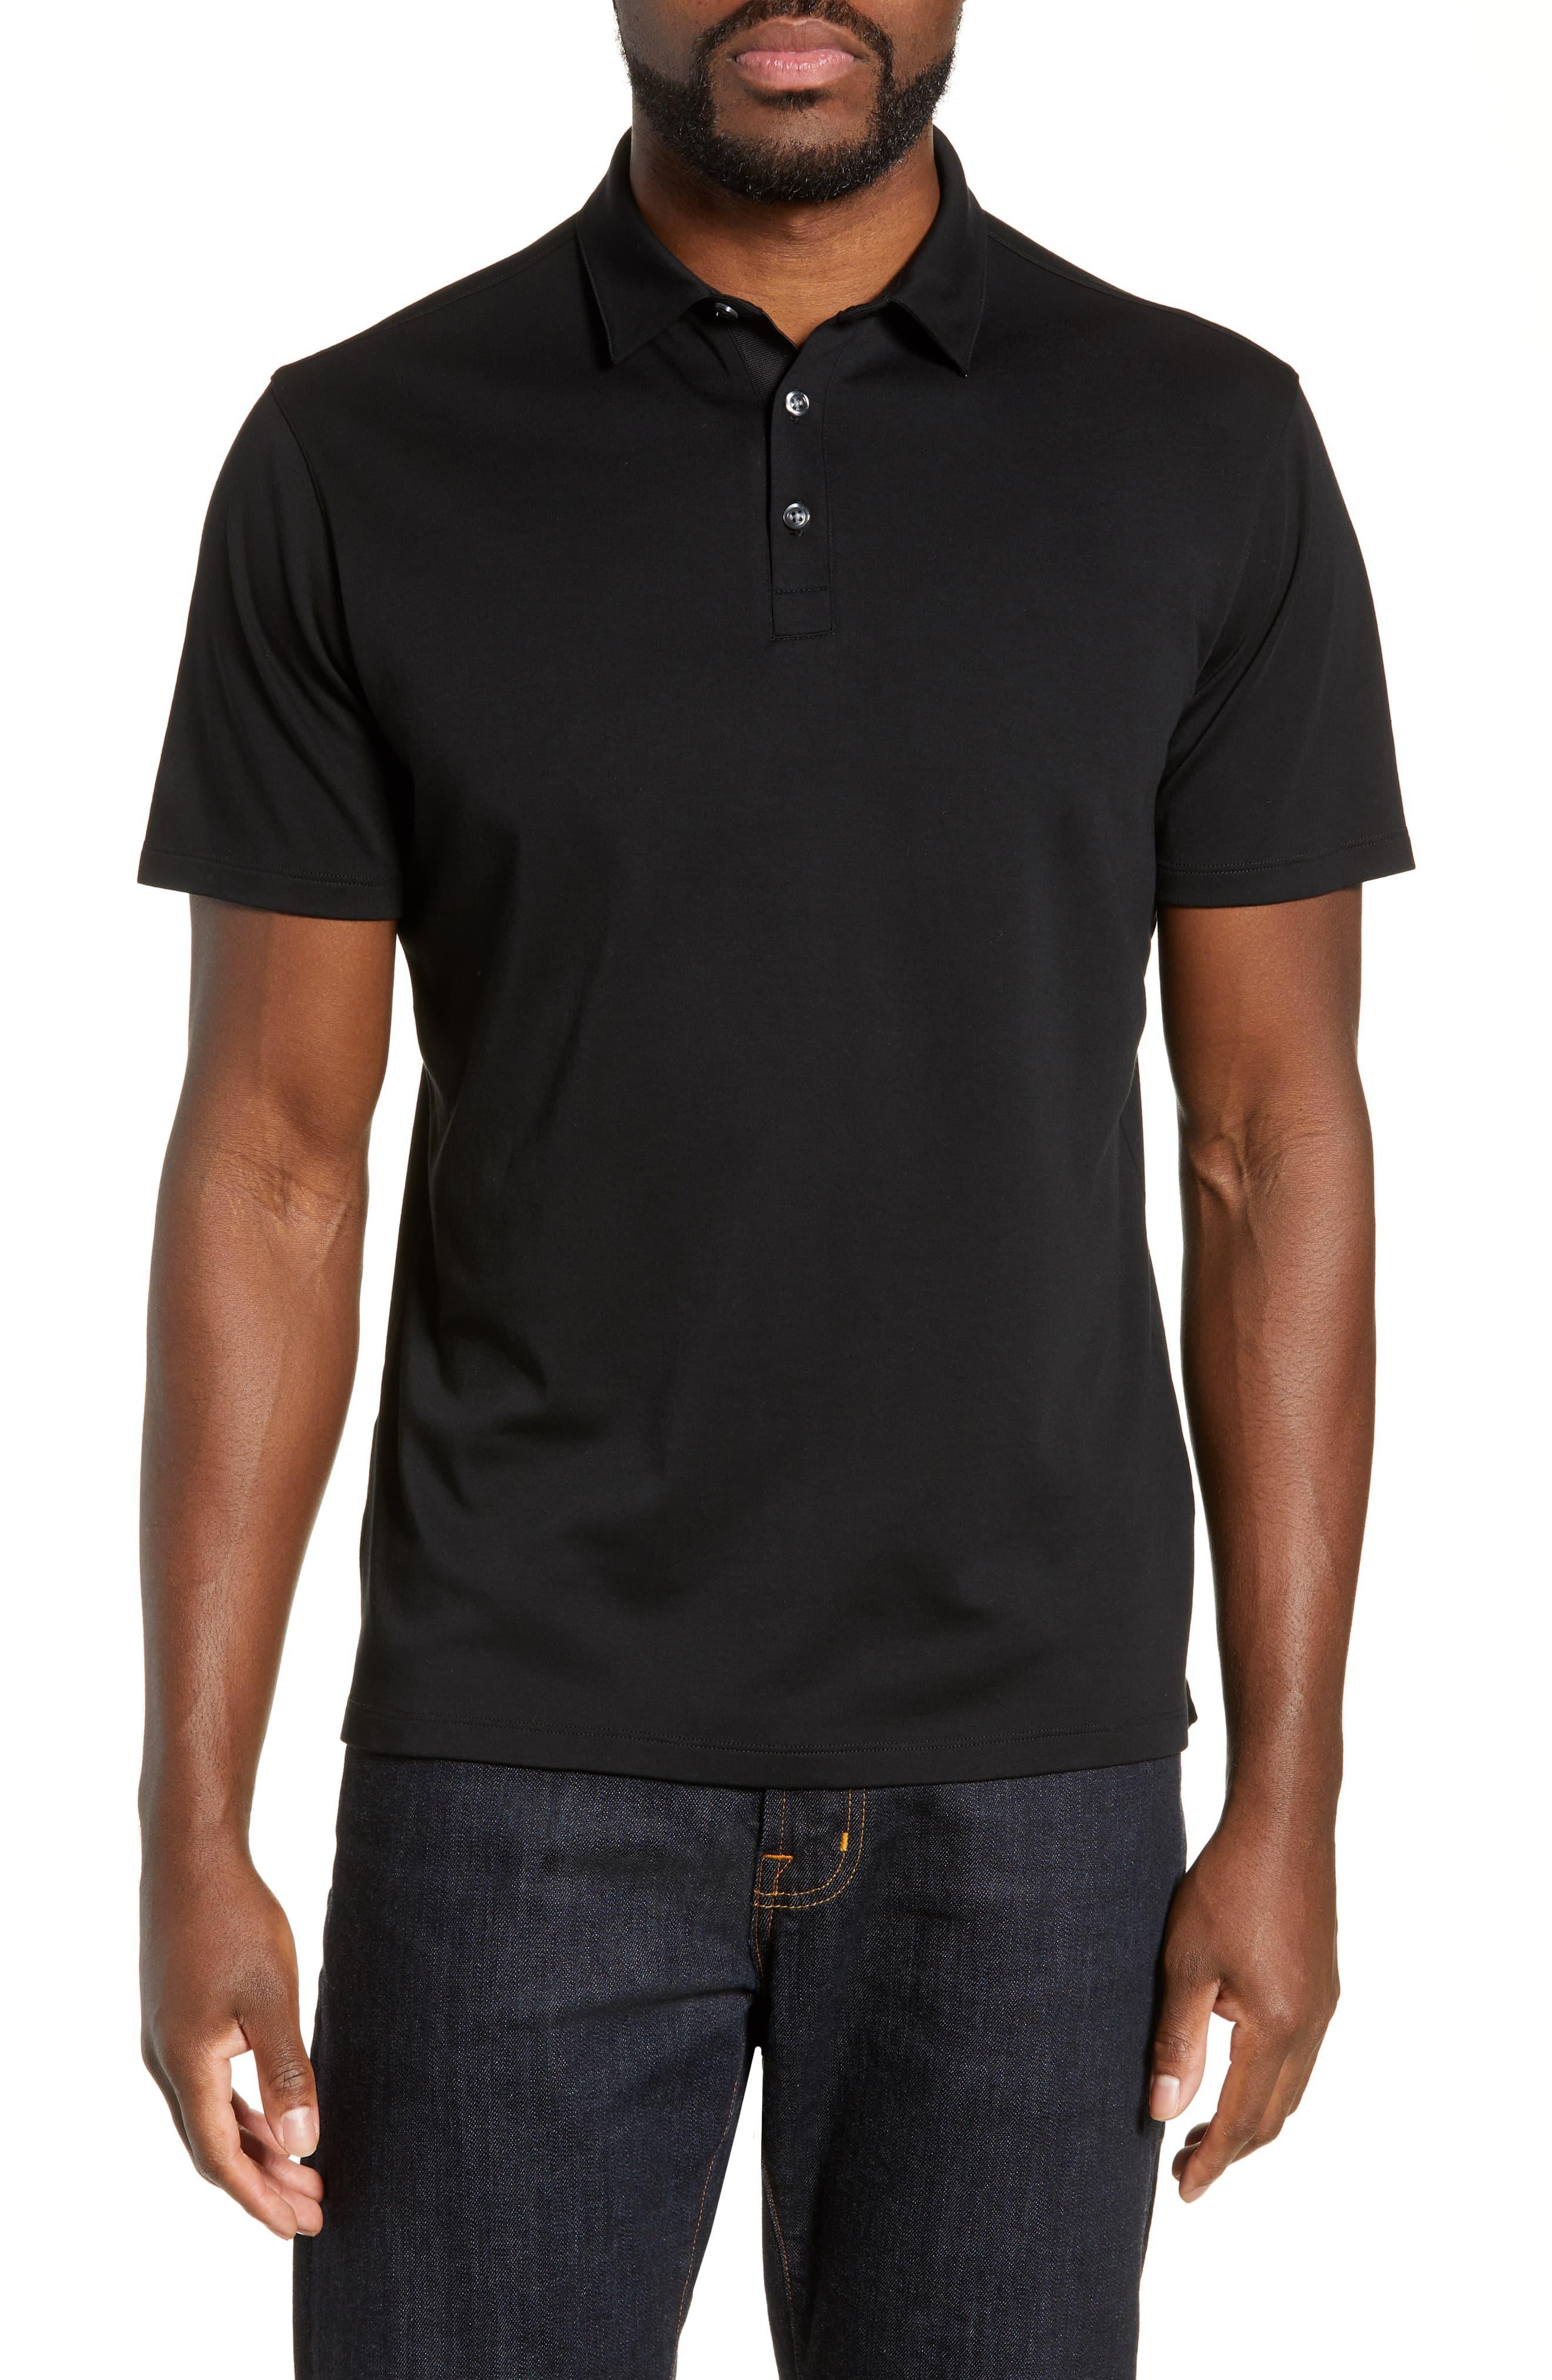 Robert Barakett Cotton Senneville Polo Shirt in Black for Men - Lyst